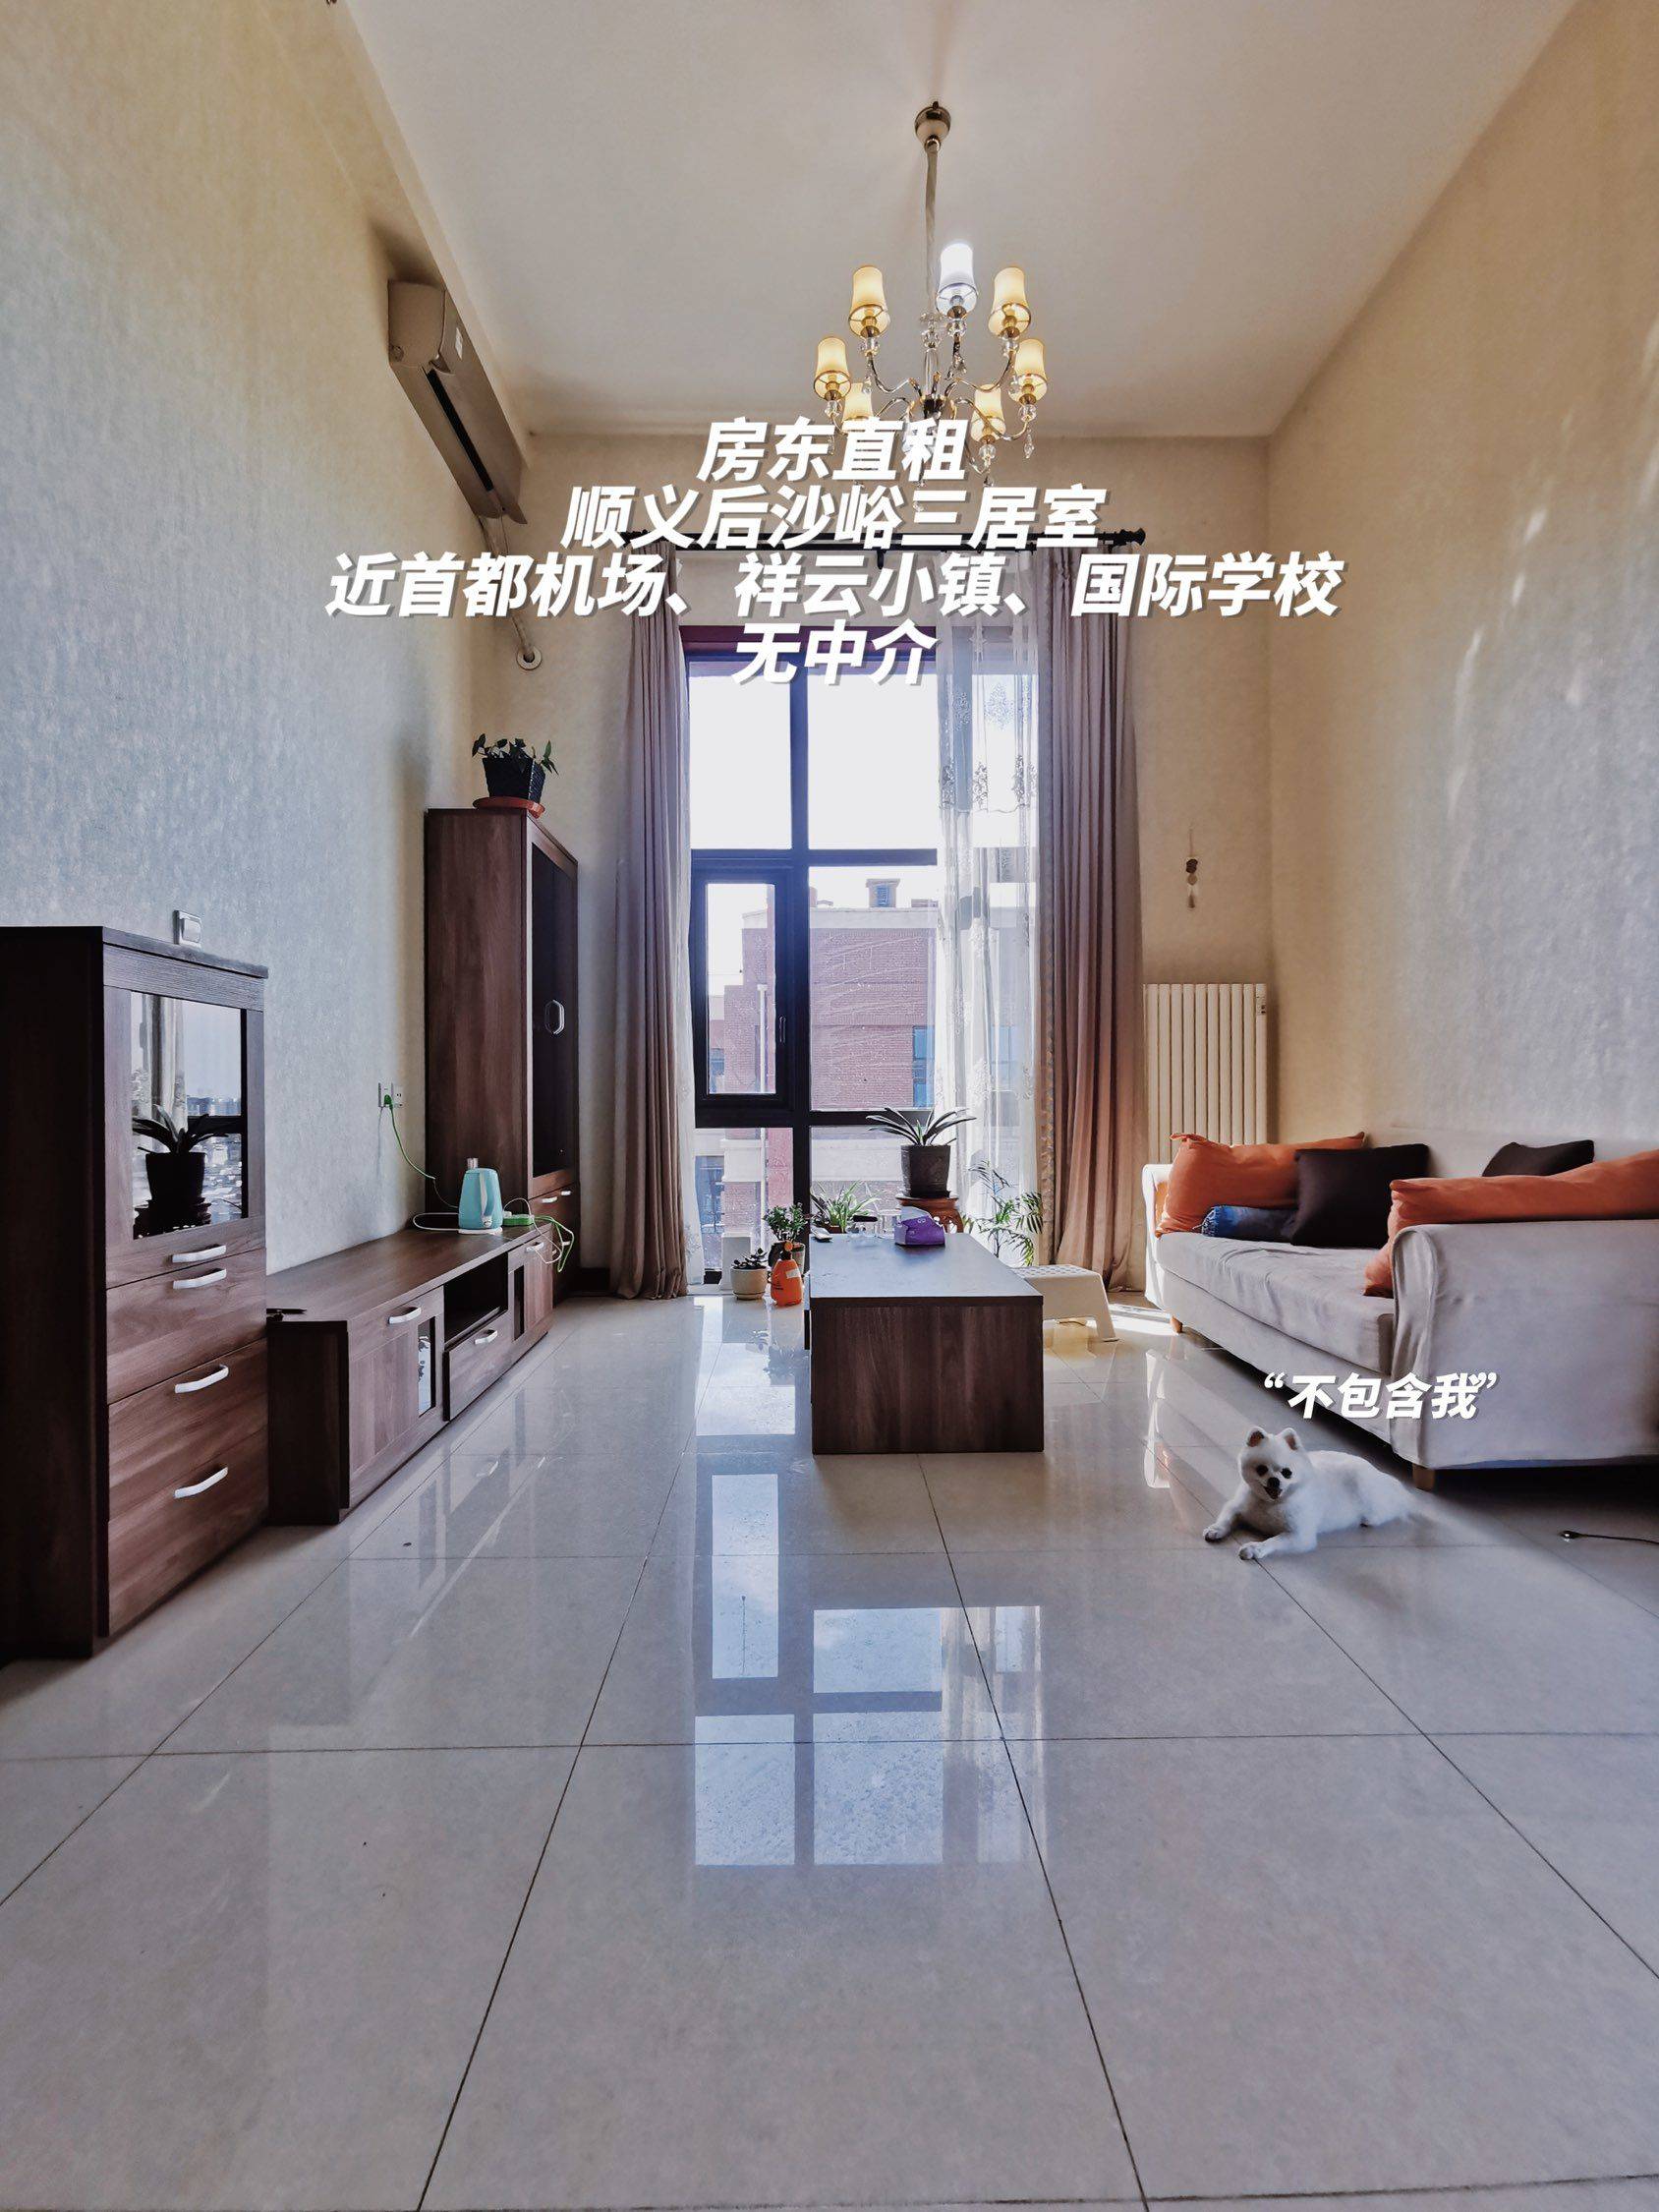 北京-顺义-不能养宠物,温馨小窝,干净治愈